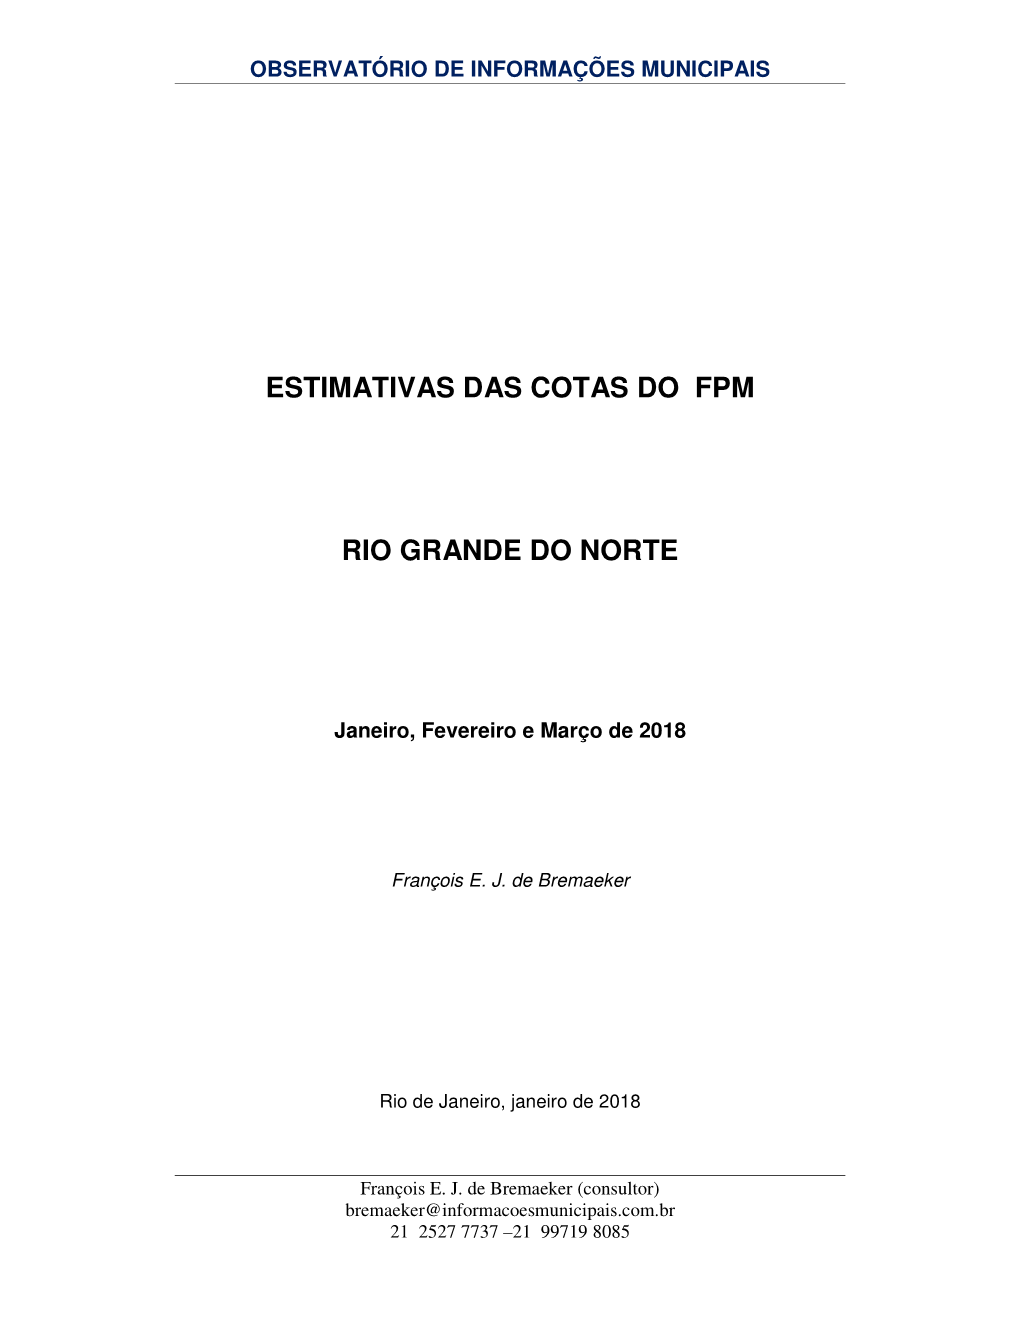 ESTIMATIVAS DAS COTAS DO FPM RIO GRANDE DO NORTE -.. Observatório De Informações Municipais